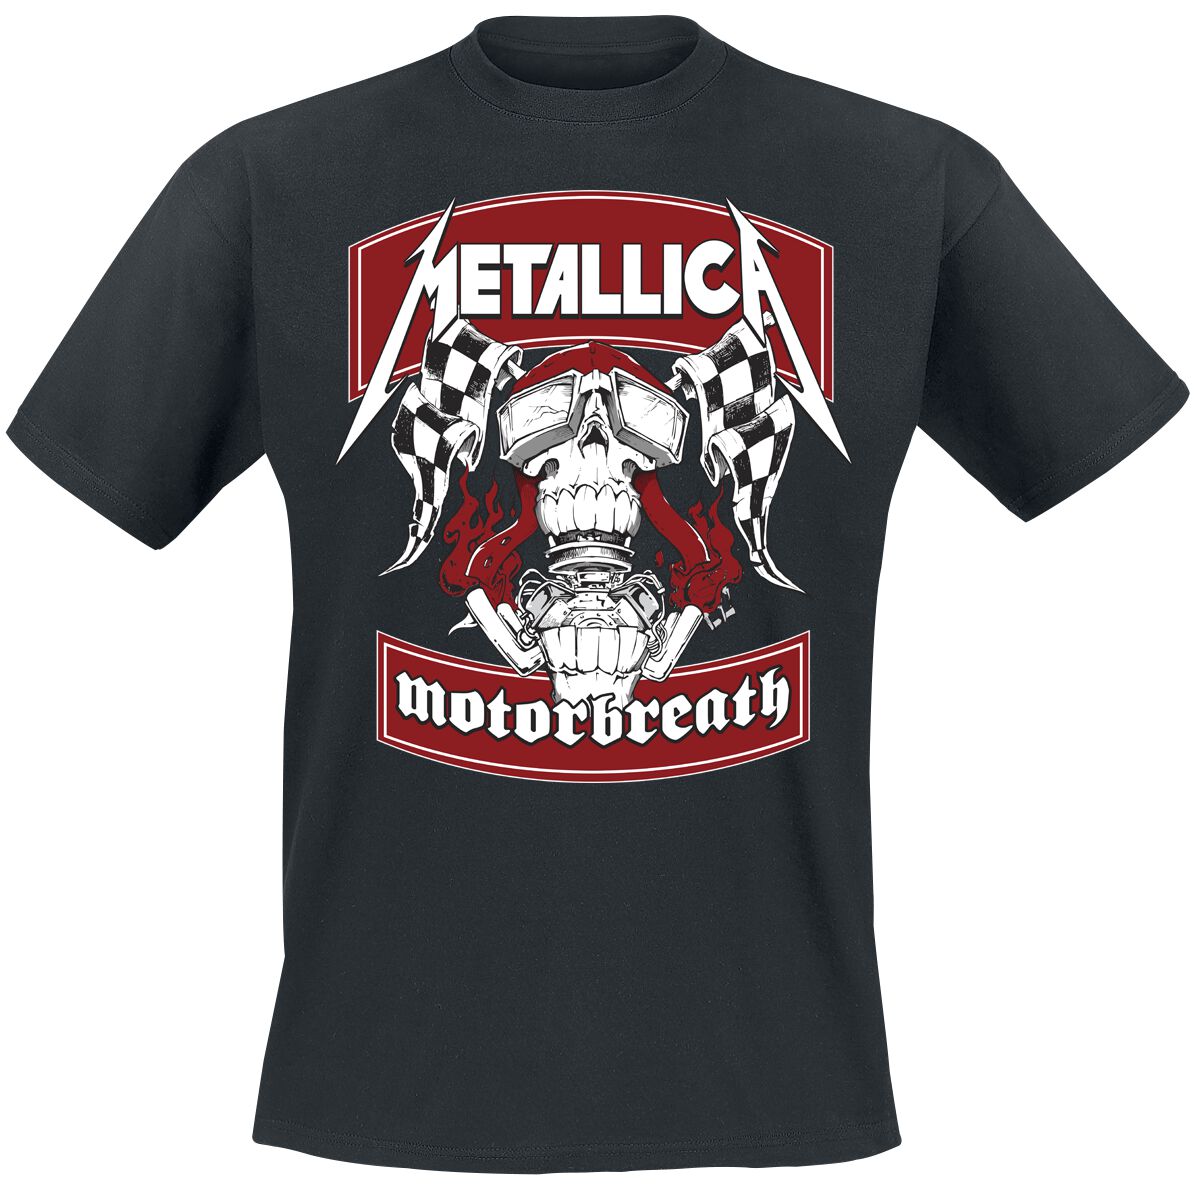 Metallica motorbreath. Motorbreath Metallica. Metallica 1996 load. Metallica load майка. Metallica Motorbreath Tshirt.